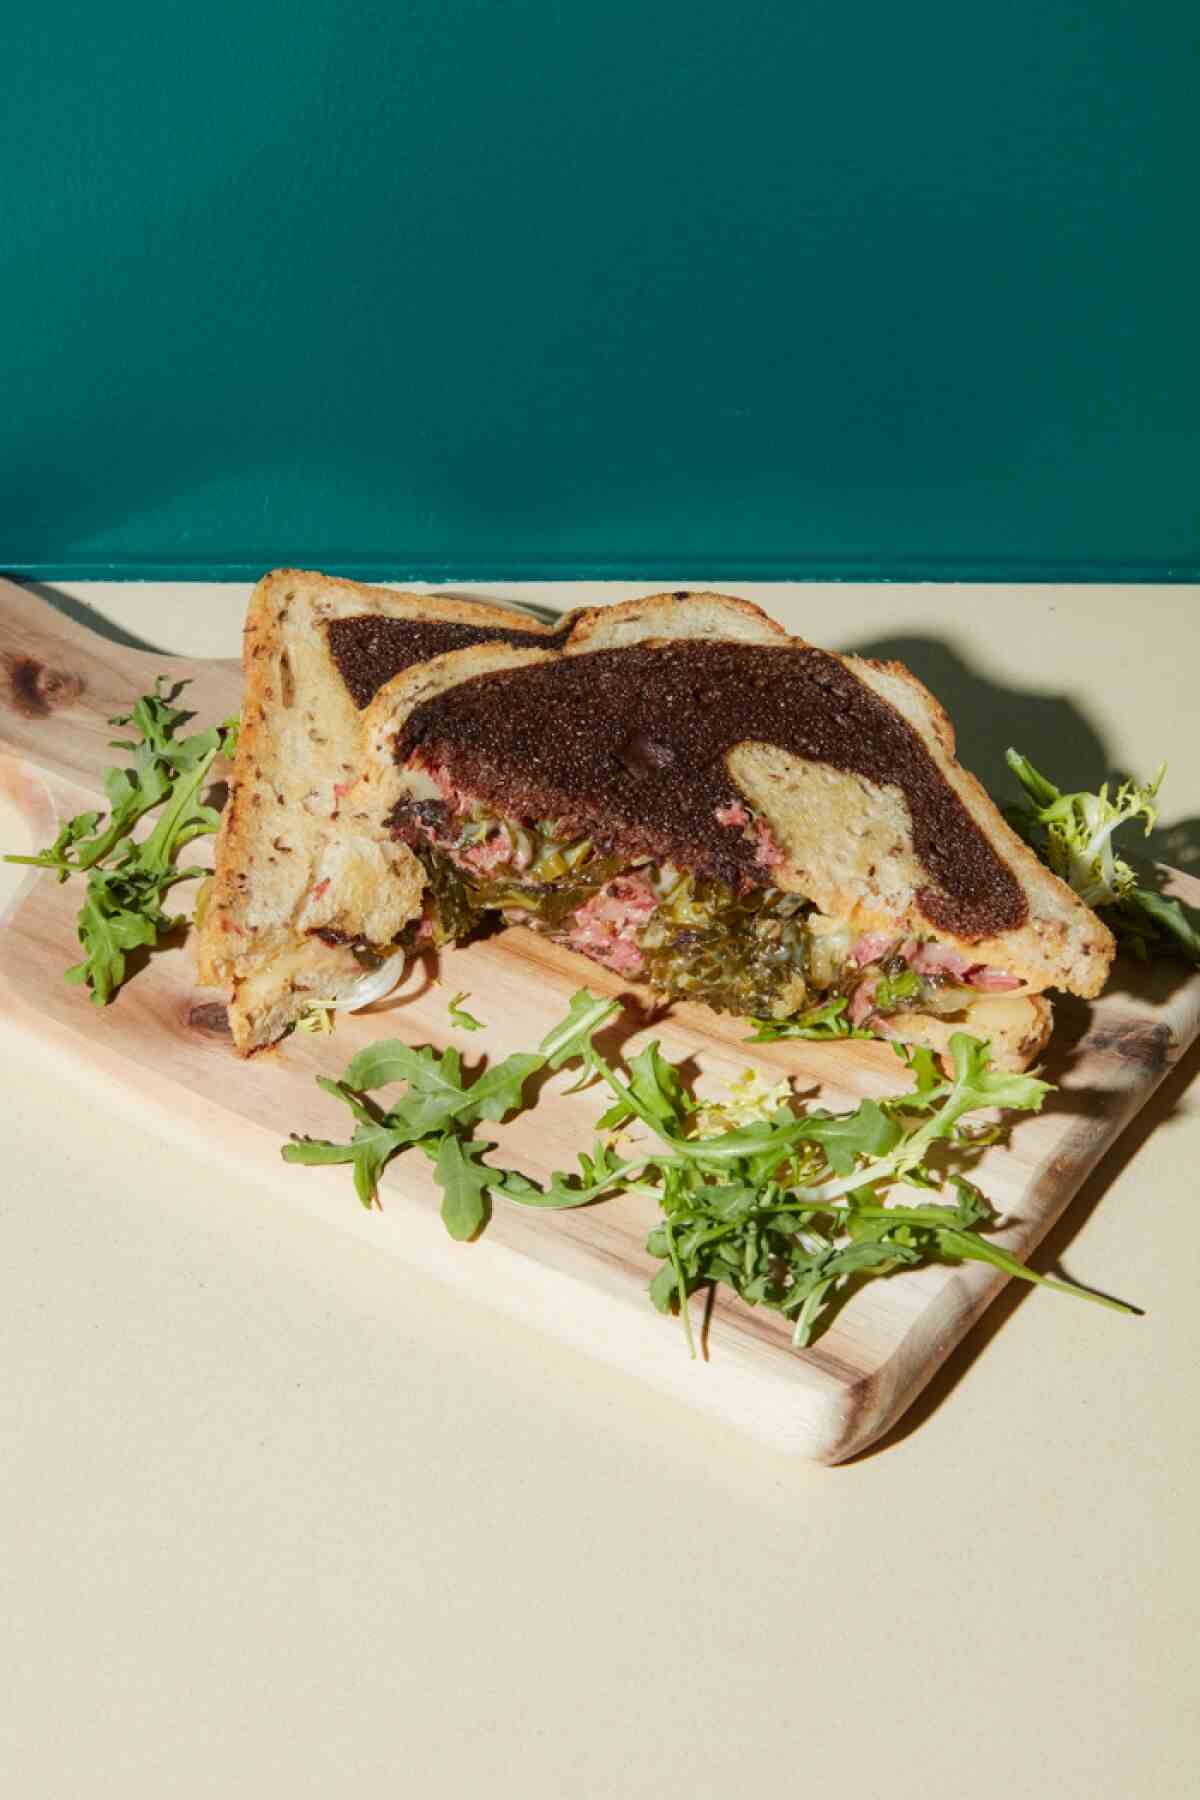 Ein Pastrami-Sandwich auf marmoriertem Roggen vor einer grünen Wand